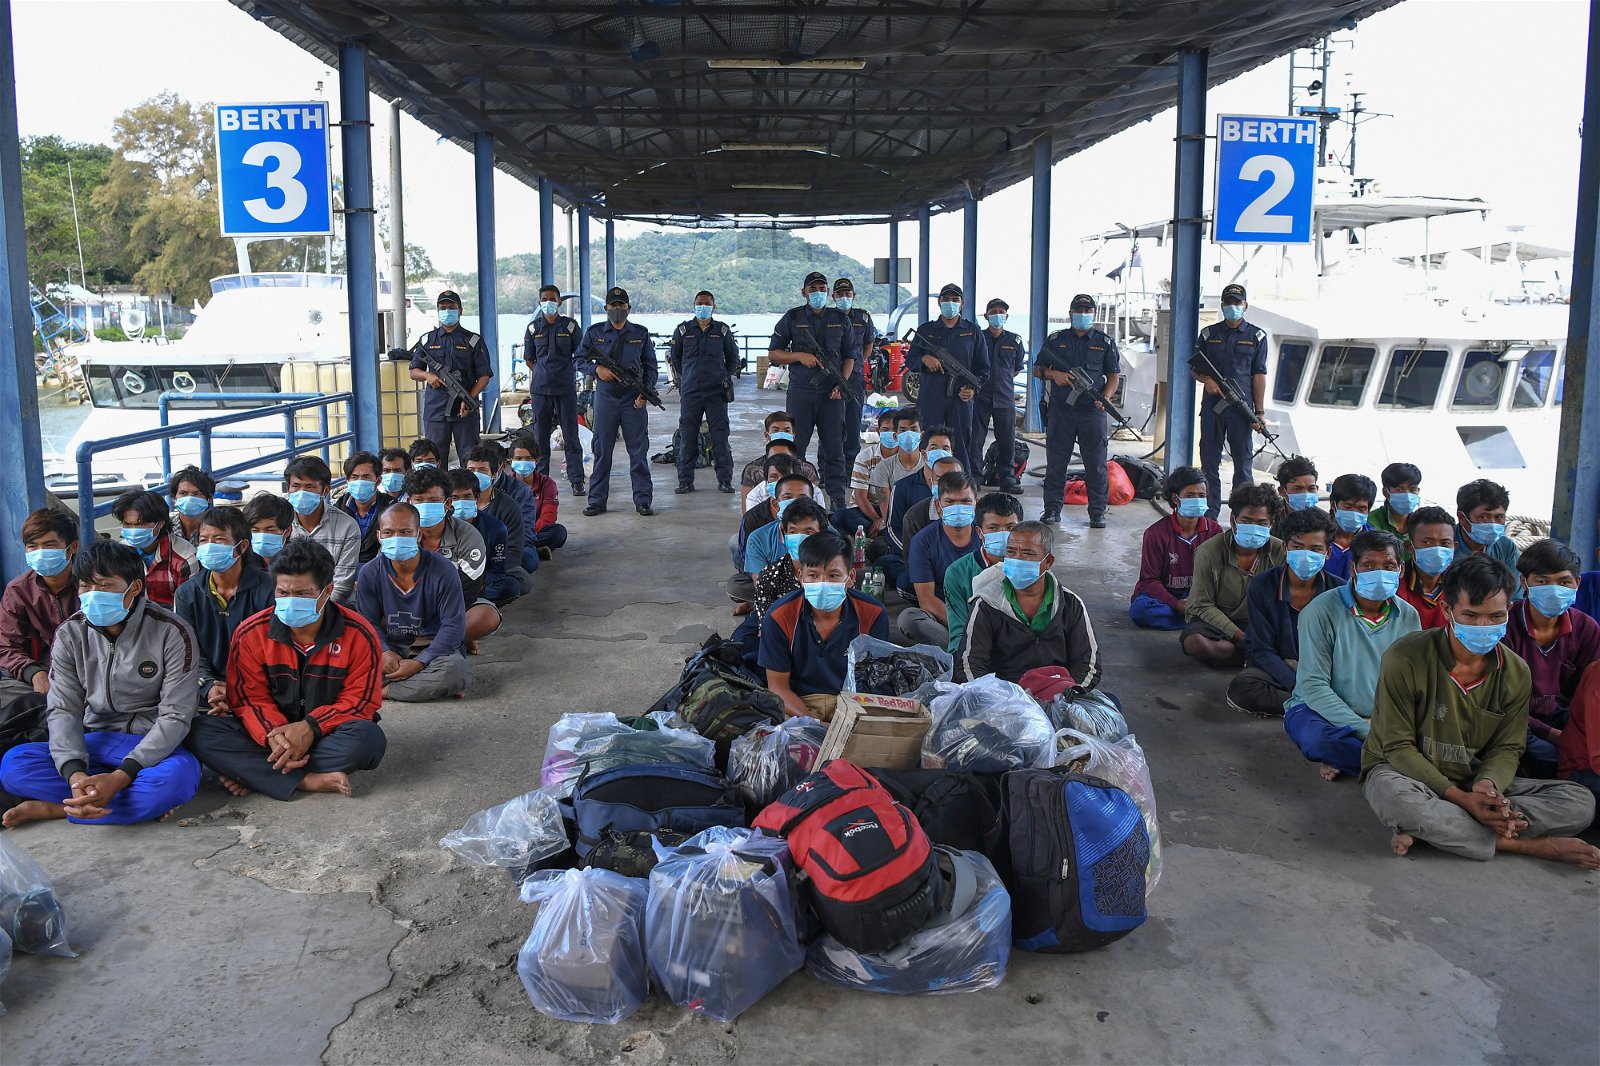 大马海事执法机构自6月24日展开“海马行动”（Kuda Laut），主要打击擅自闯入我国海域的越南渔船。于今年8月16日和17日两天内，大马海事执法机构在瓜拉甘马挽岸外68至147海里的海域展开“海马行动”，成功逮捕111名年龄介于17岁至55岁的非法越南渔民，被扣留的渔船、渔获、柴油等用具，总值超过1000万令吉。